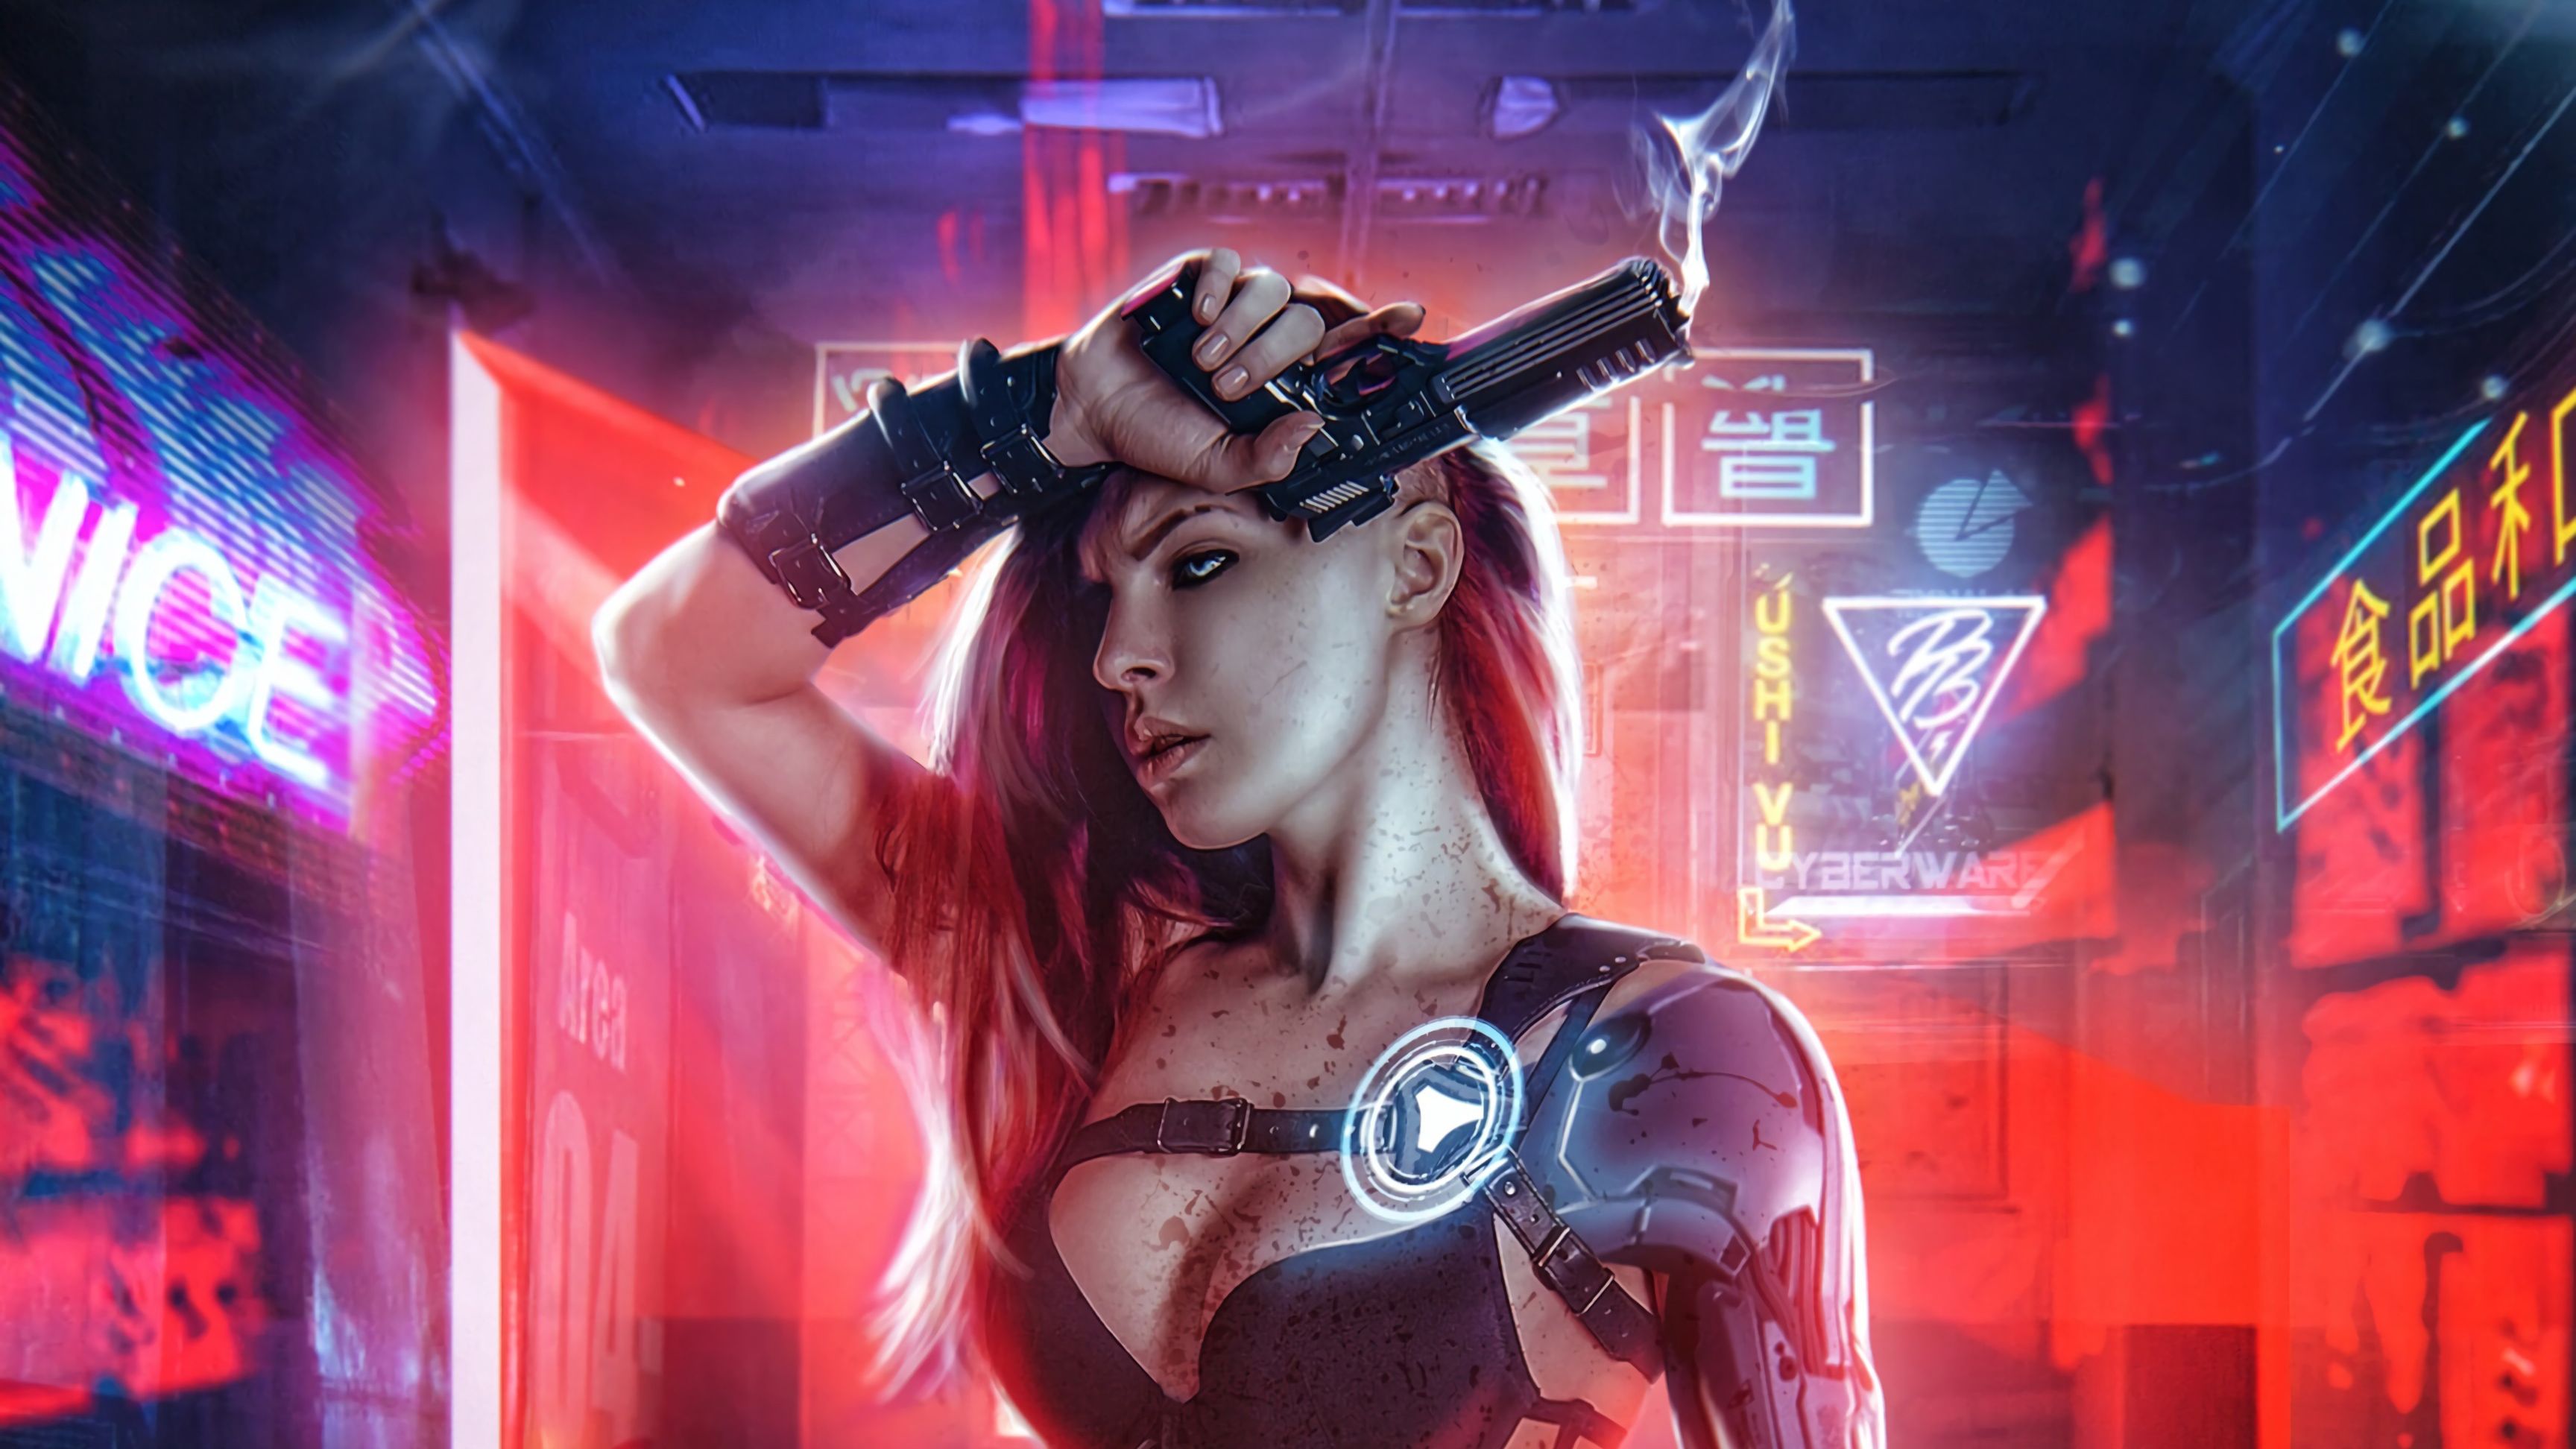 Cyberpunk Girl Digital Art, HD Artist, 4k Wallpapers, Images